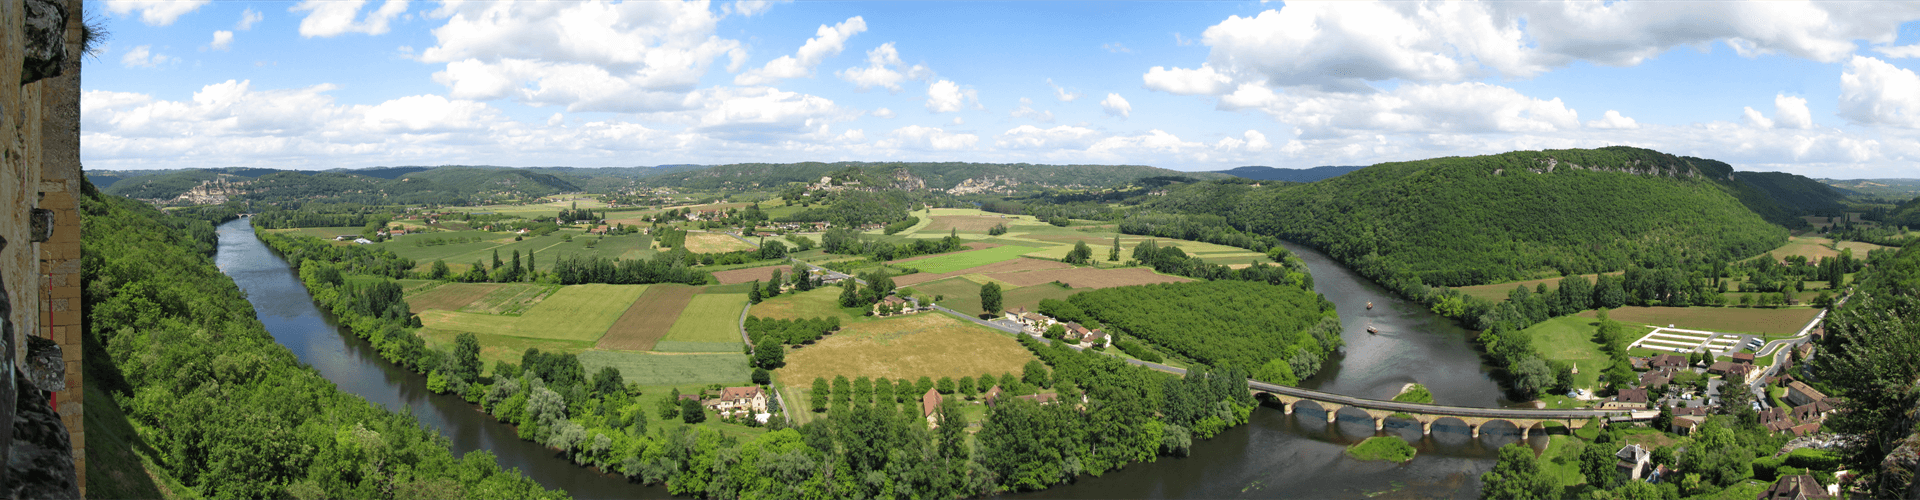 Vakantie in de Aquitaine, Lot en Dordogne